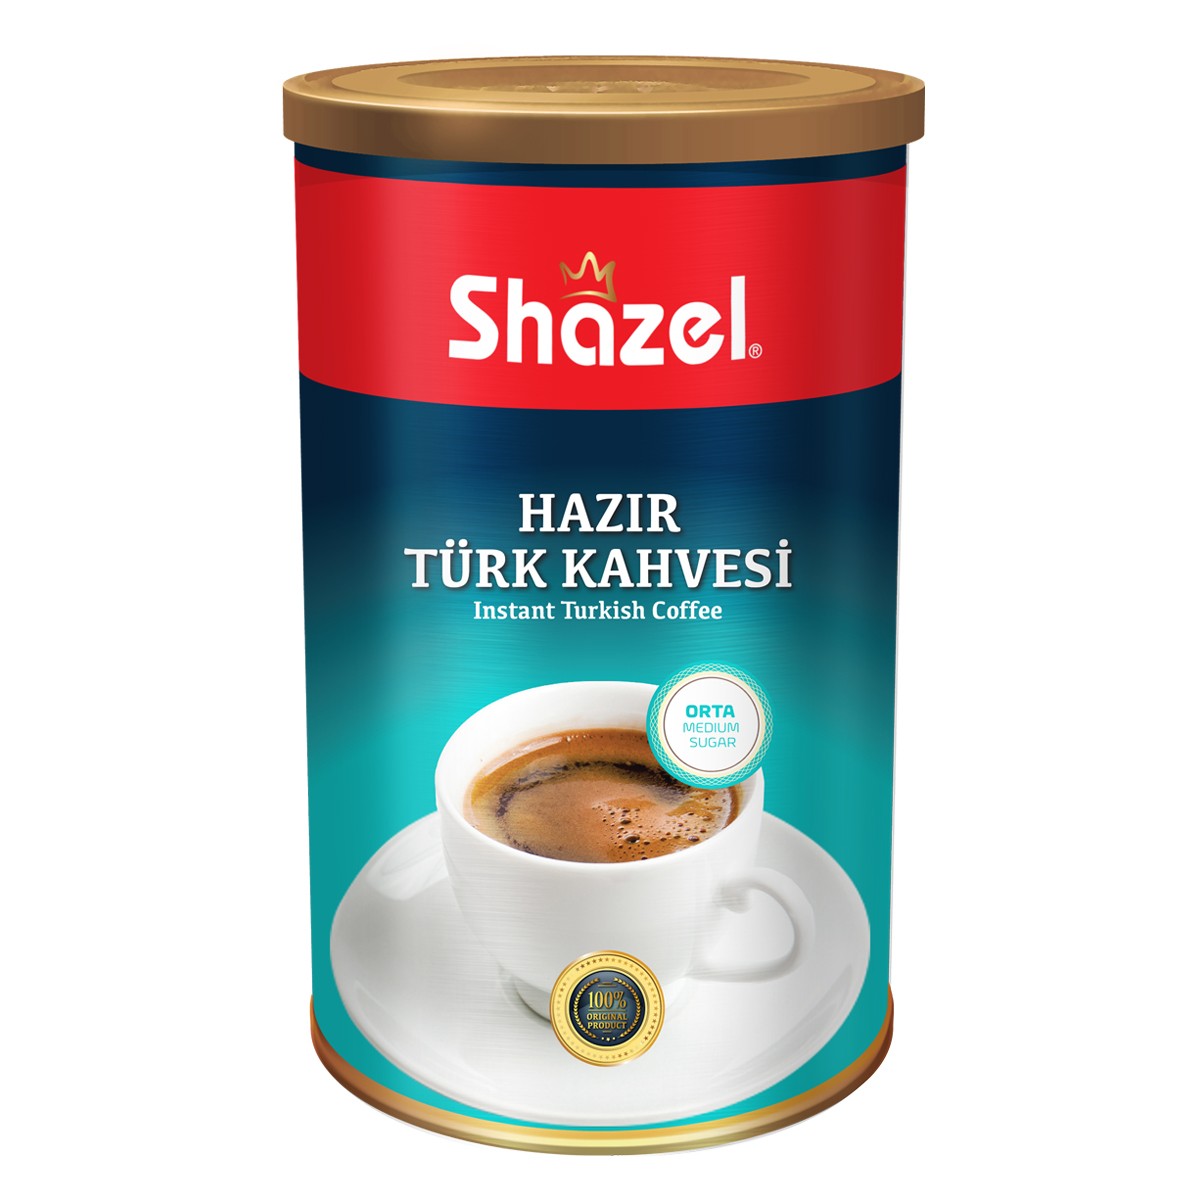 Shazel Instant Turkish Coffee Sugar FREE - 250g tin x 12 piece